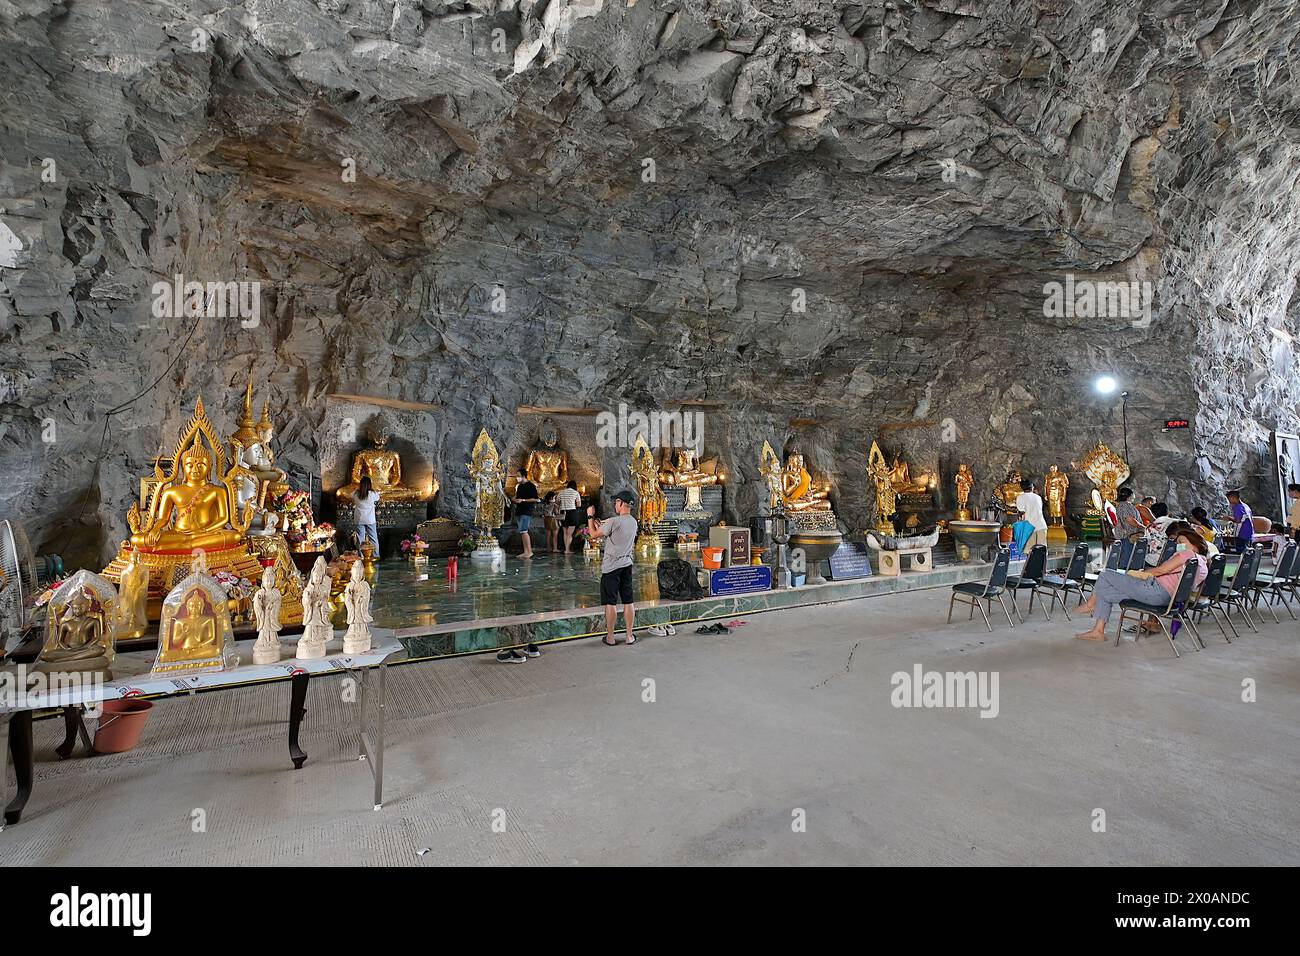 Images de Bouddha dans la salle de prière construite dans un tunnel derrière le Bouddha Luang Pho U Thong à la colline de Khao Tham Thiam, province de Suphanburi Banque D'Images